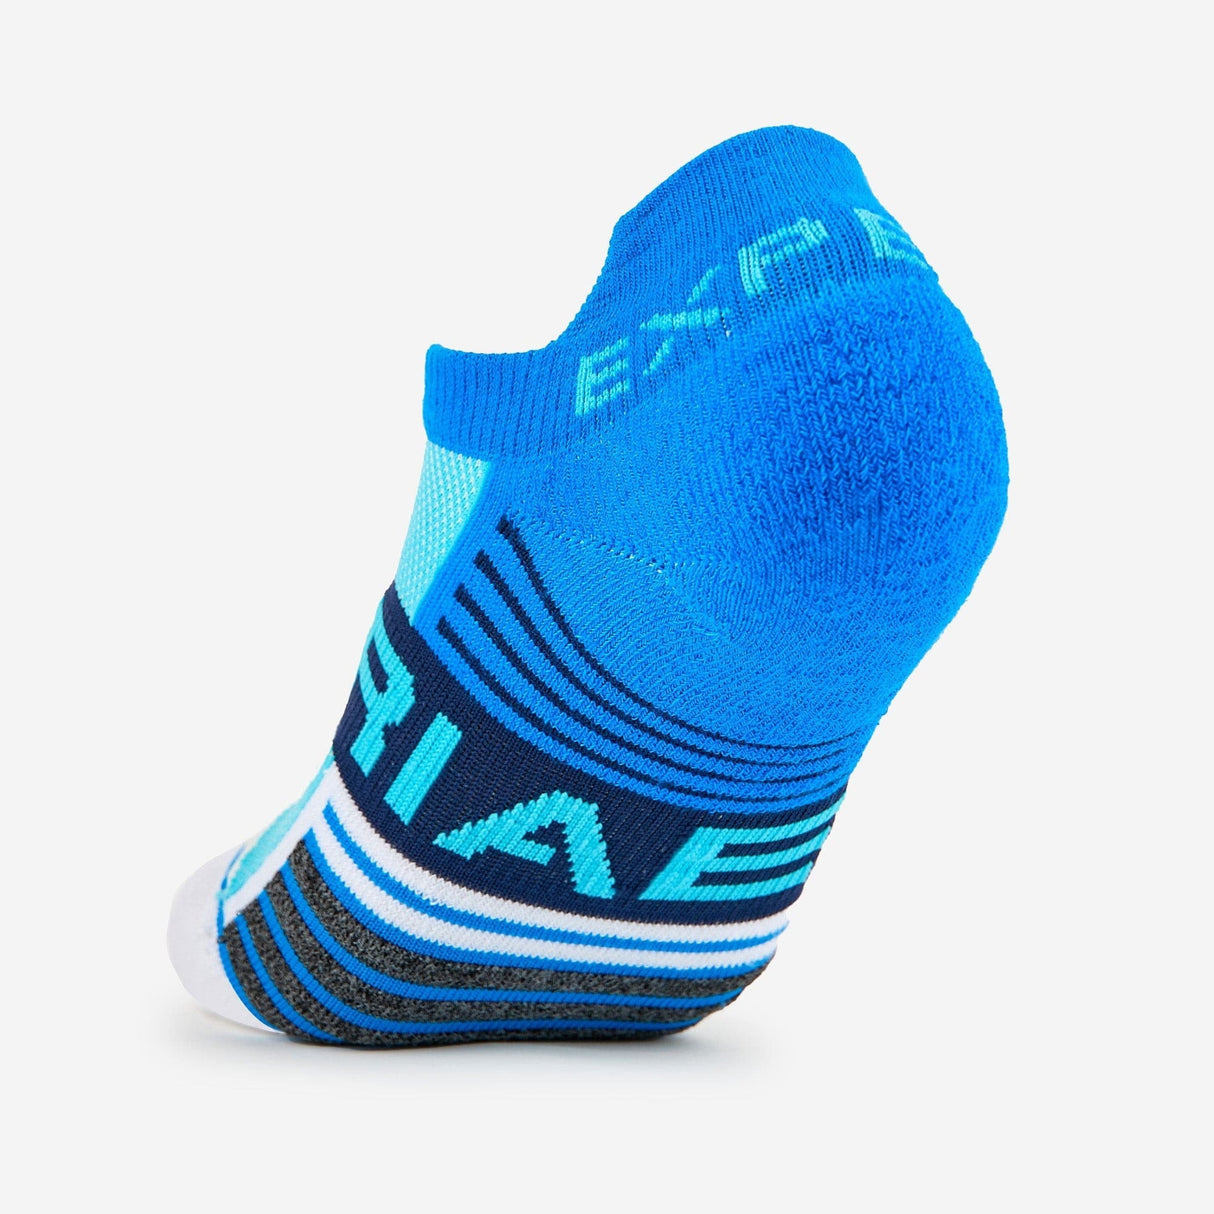 Thorlo Experia Unisex Tennis Thin Cushion With Tab Socks  - 